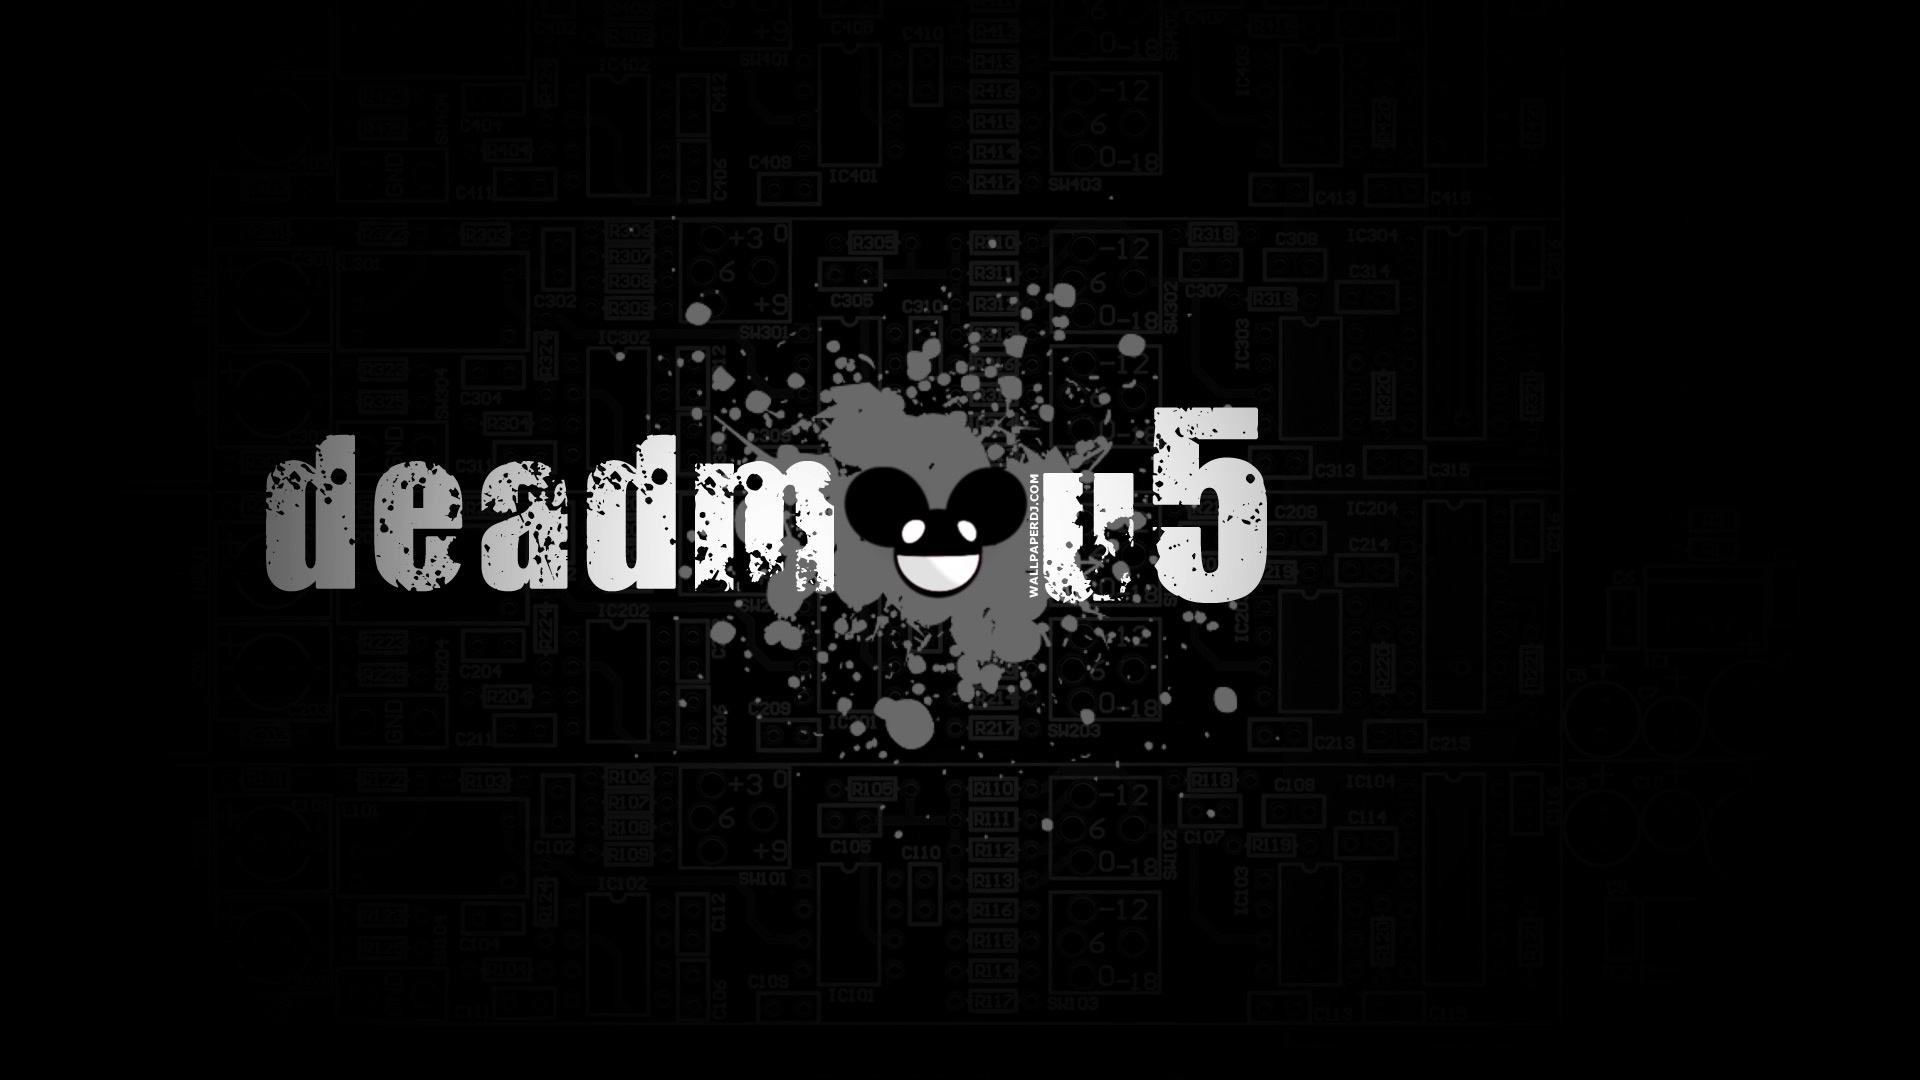 dub producers 03-Deadmau5